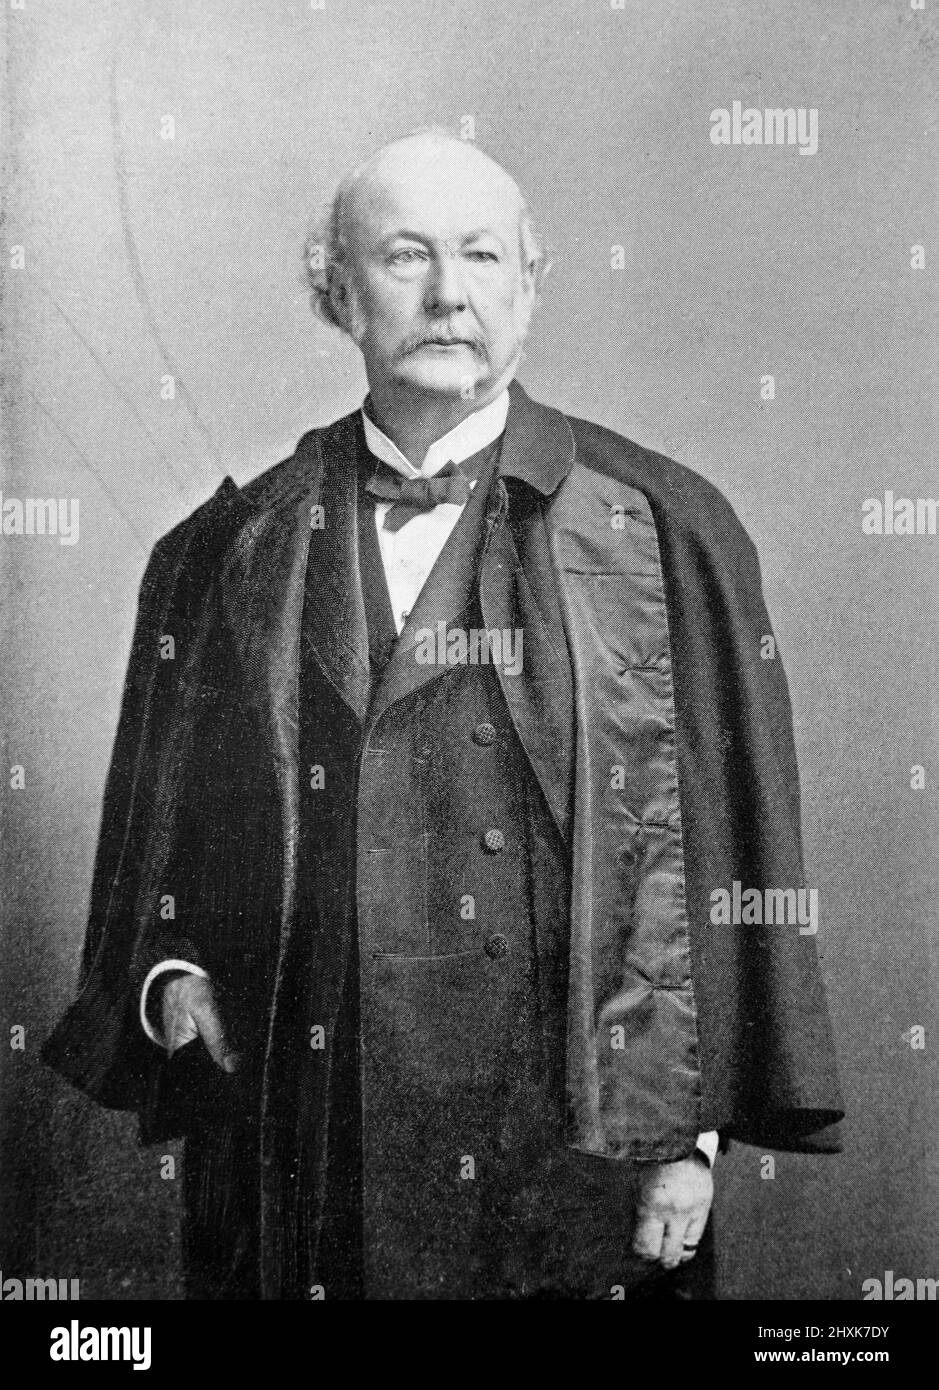 Ritratto di Edward Windsor Richards, ingegnere britannico e acciaieria; fotografia in bianco e nero scattata intorno al 1890s Foto Stock